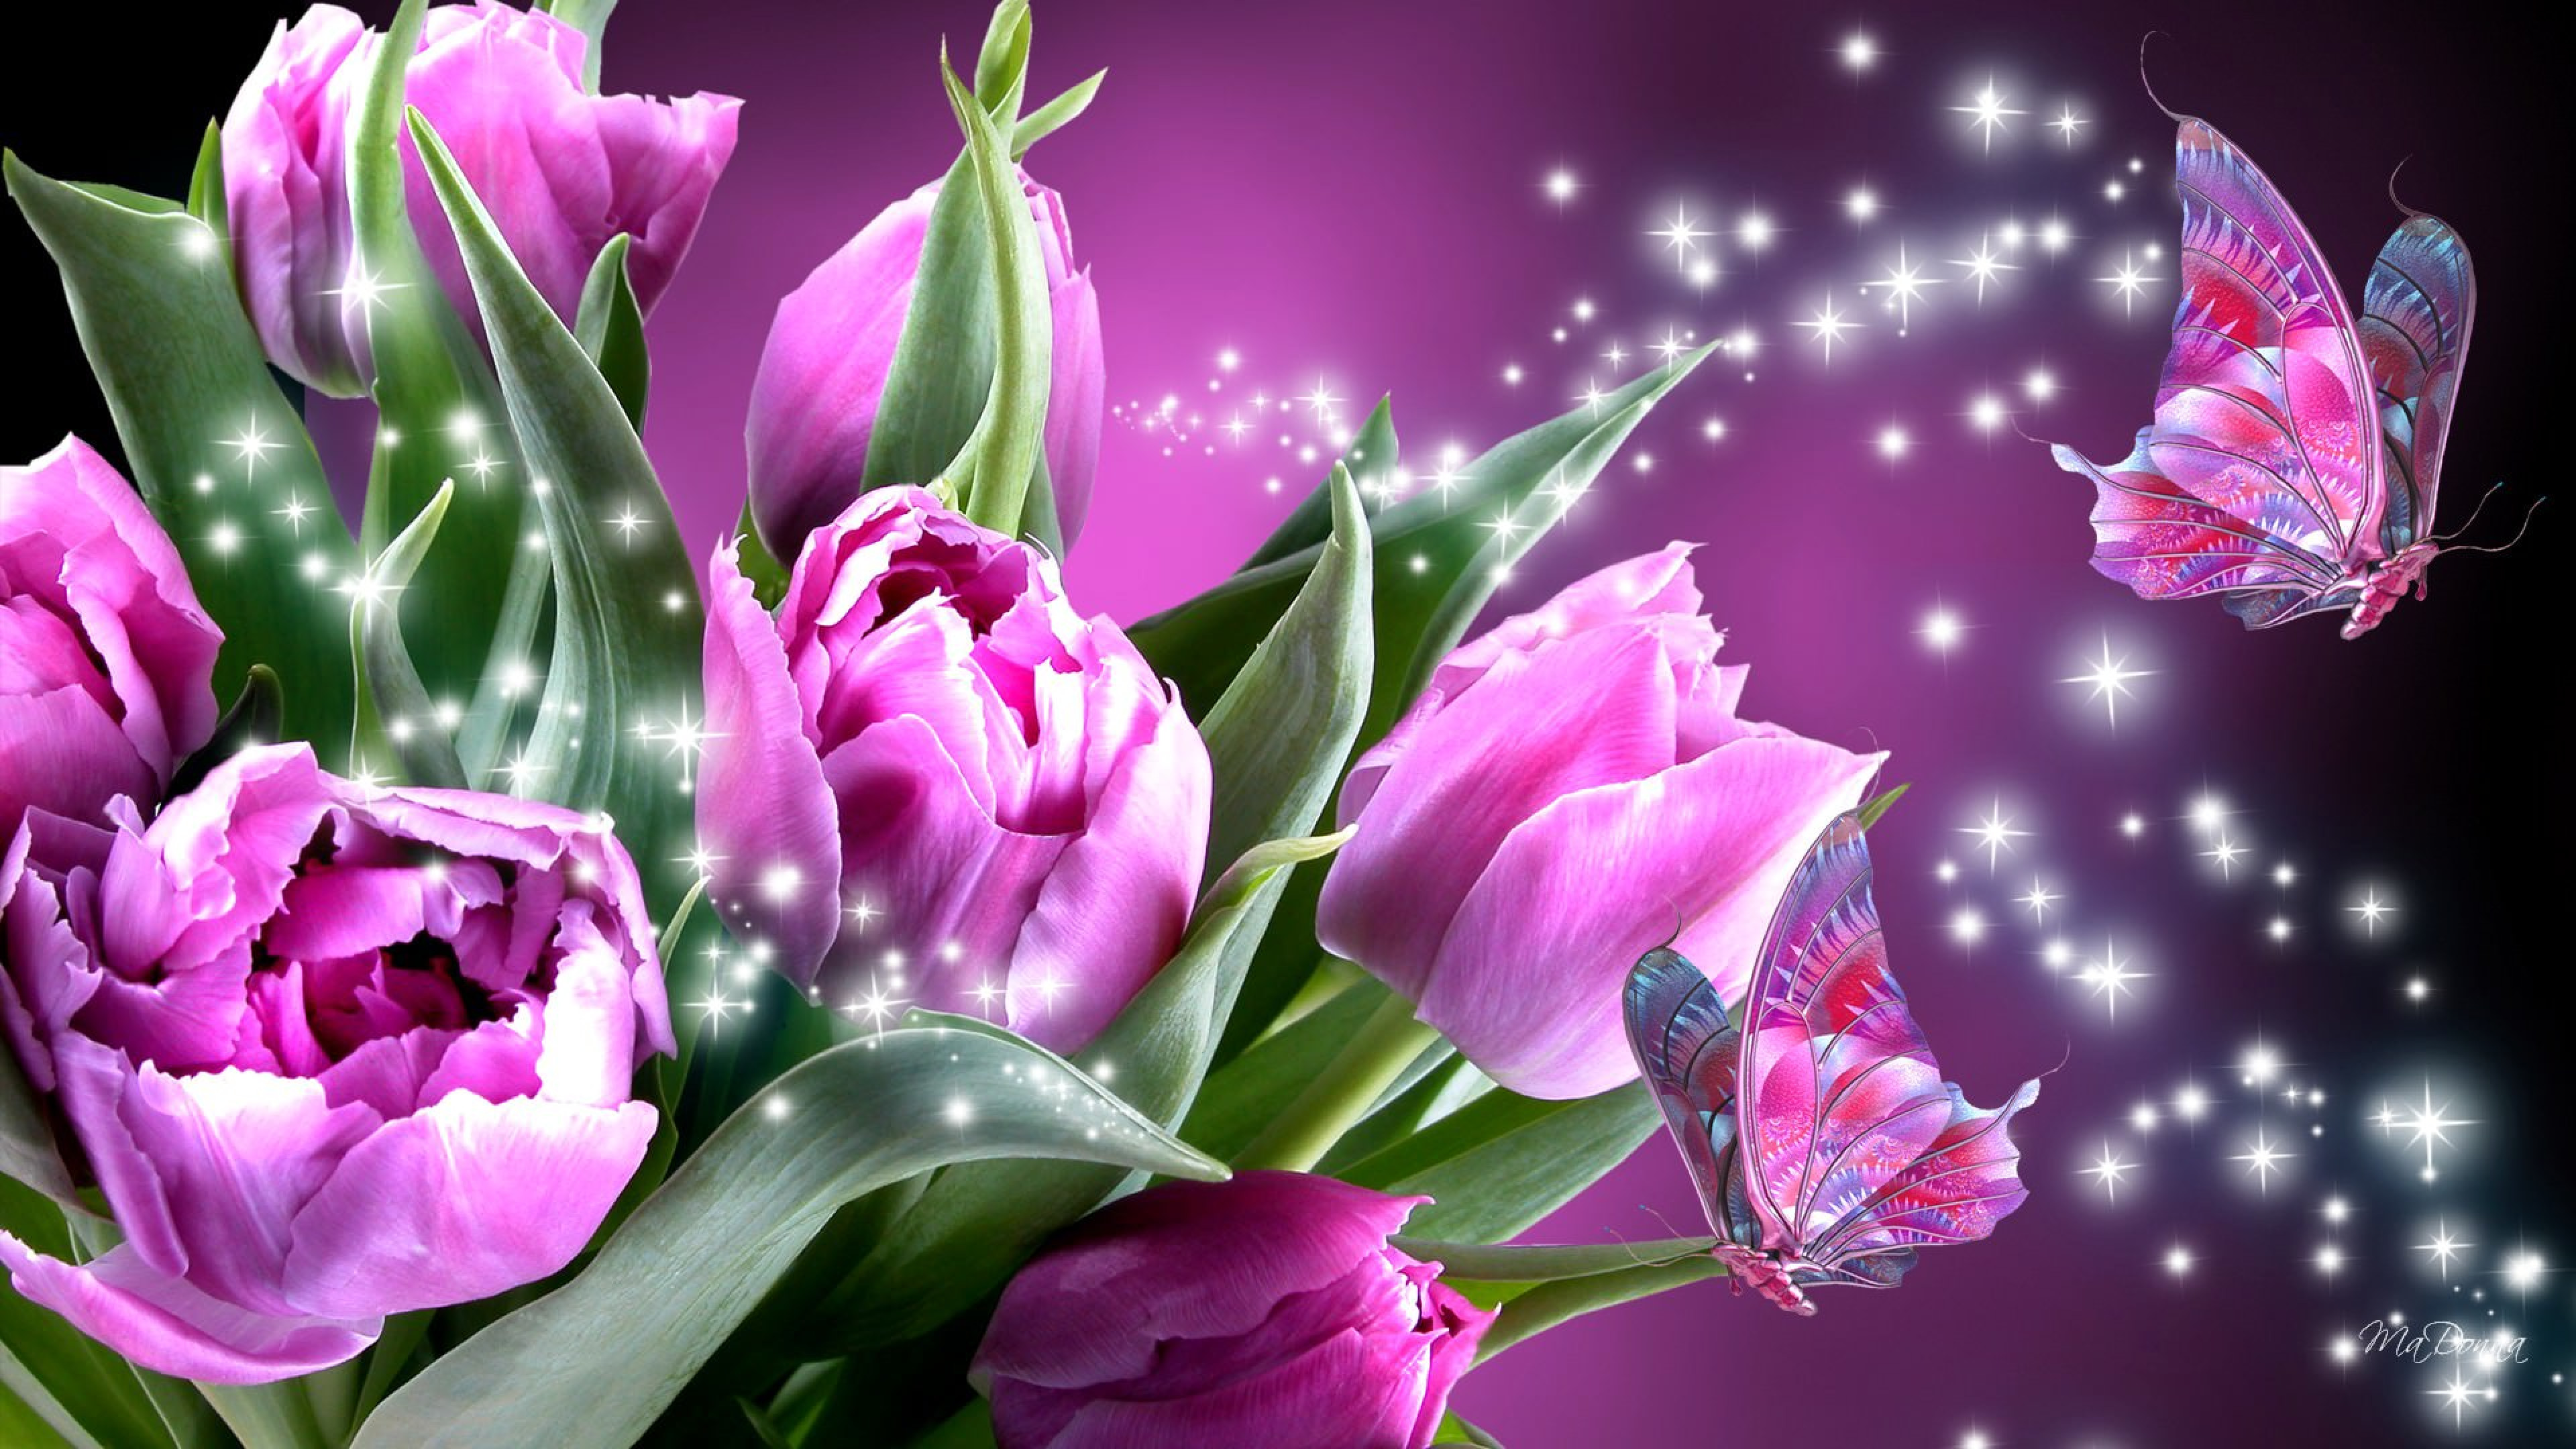 Обои на телефон красивые тюльпаны. Шикарные тюльпаны. Розовые тюльпаны. Цветы на заставку. Весенние цветы тюльпаны.